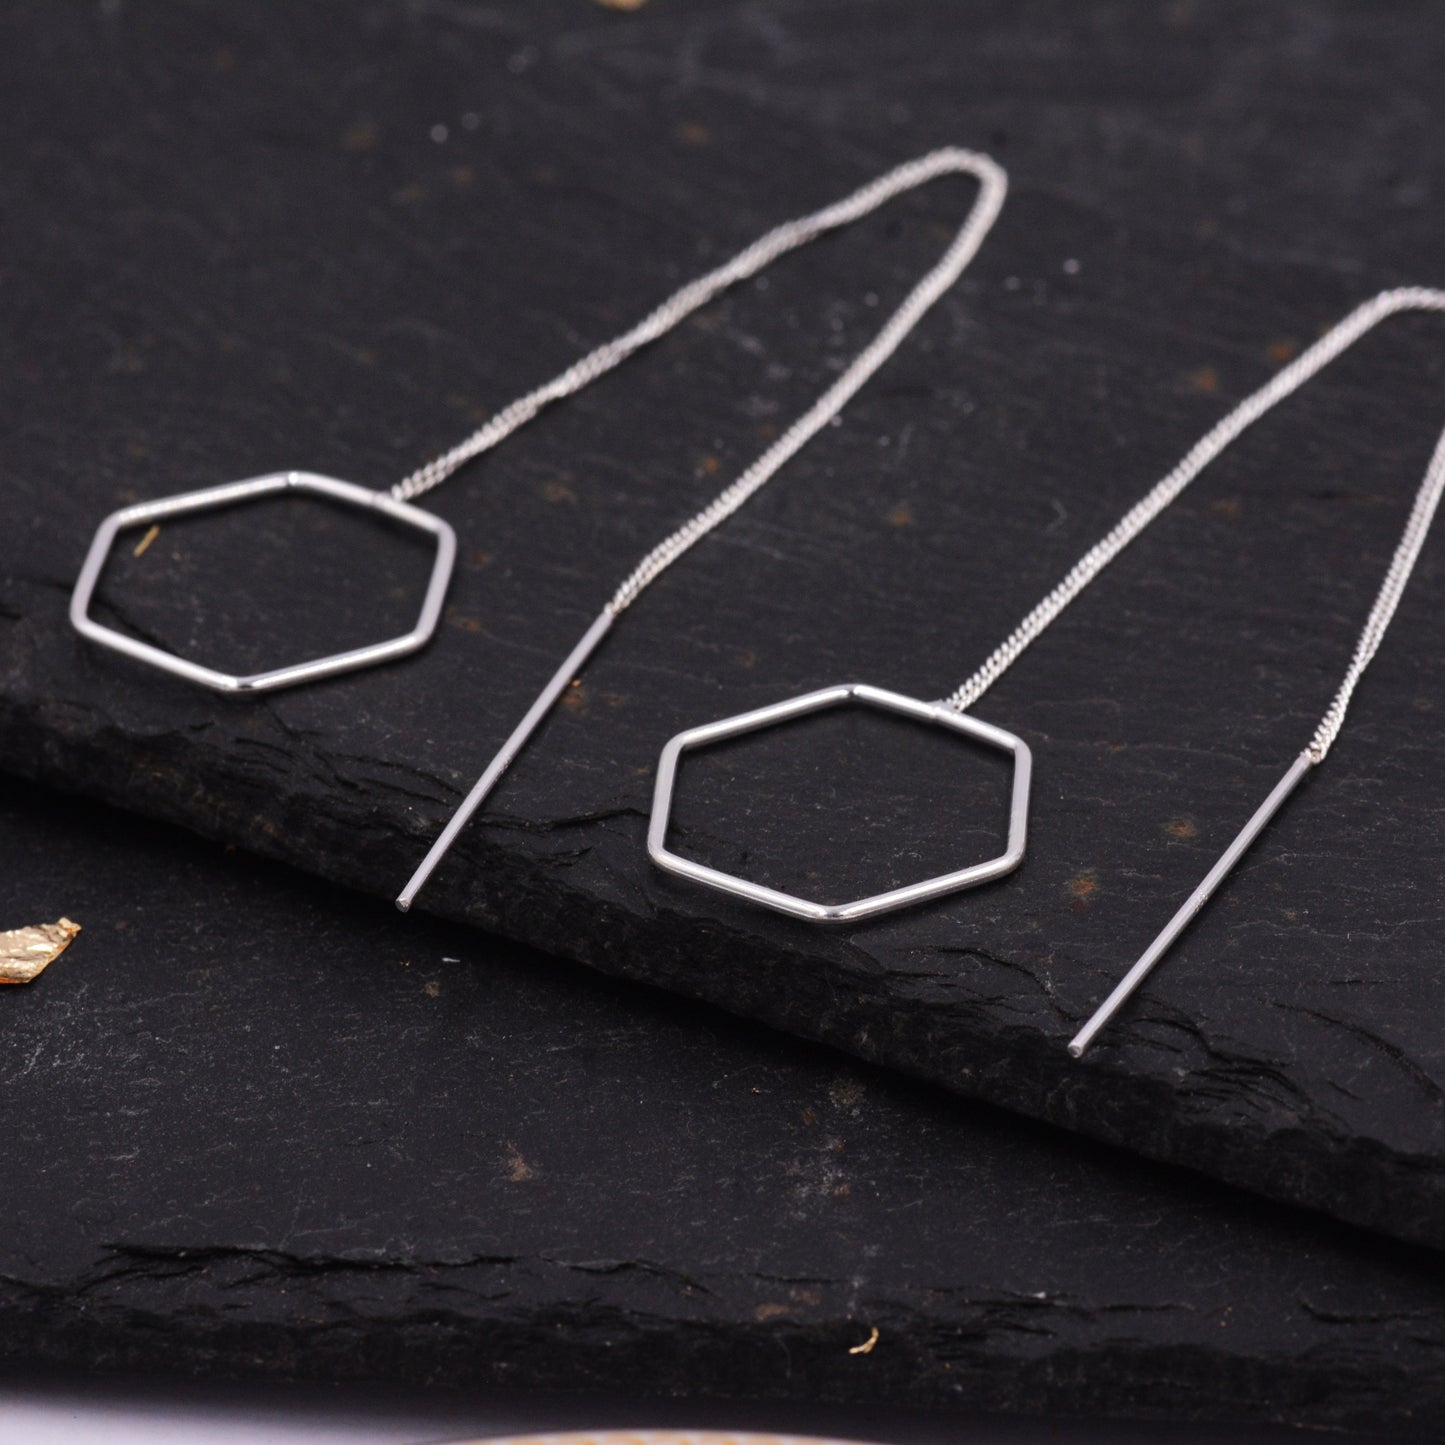 Sterling Silver Very Long Hexagon Threader Earrings, Open Geometric Shape Wire Earrings, Minimalist Simple Jewellery L37